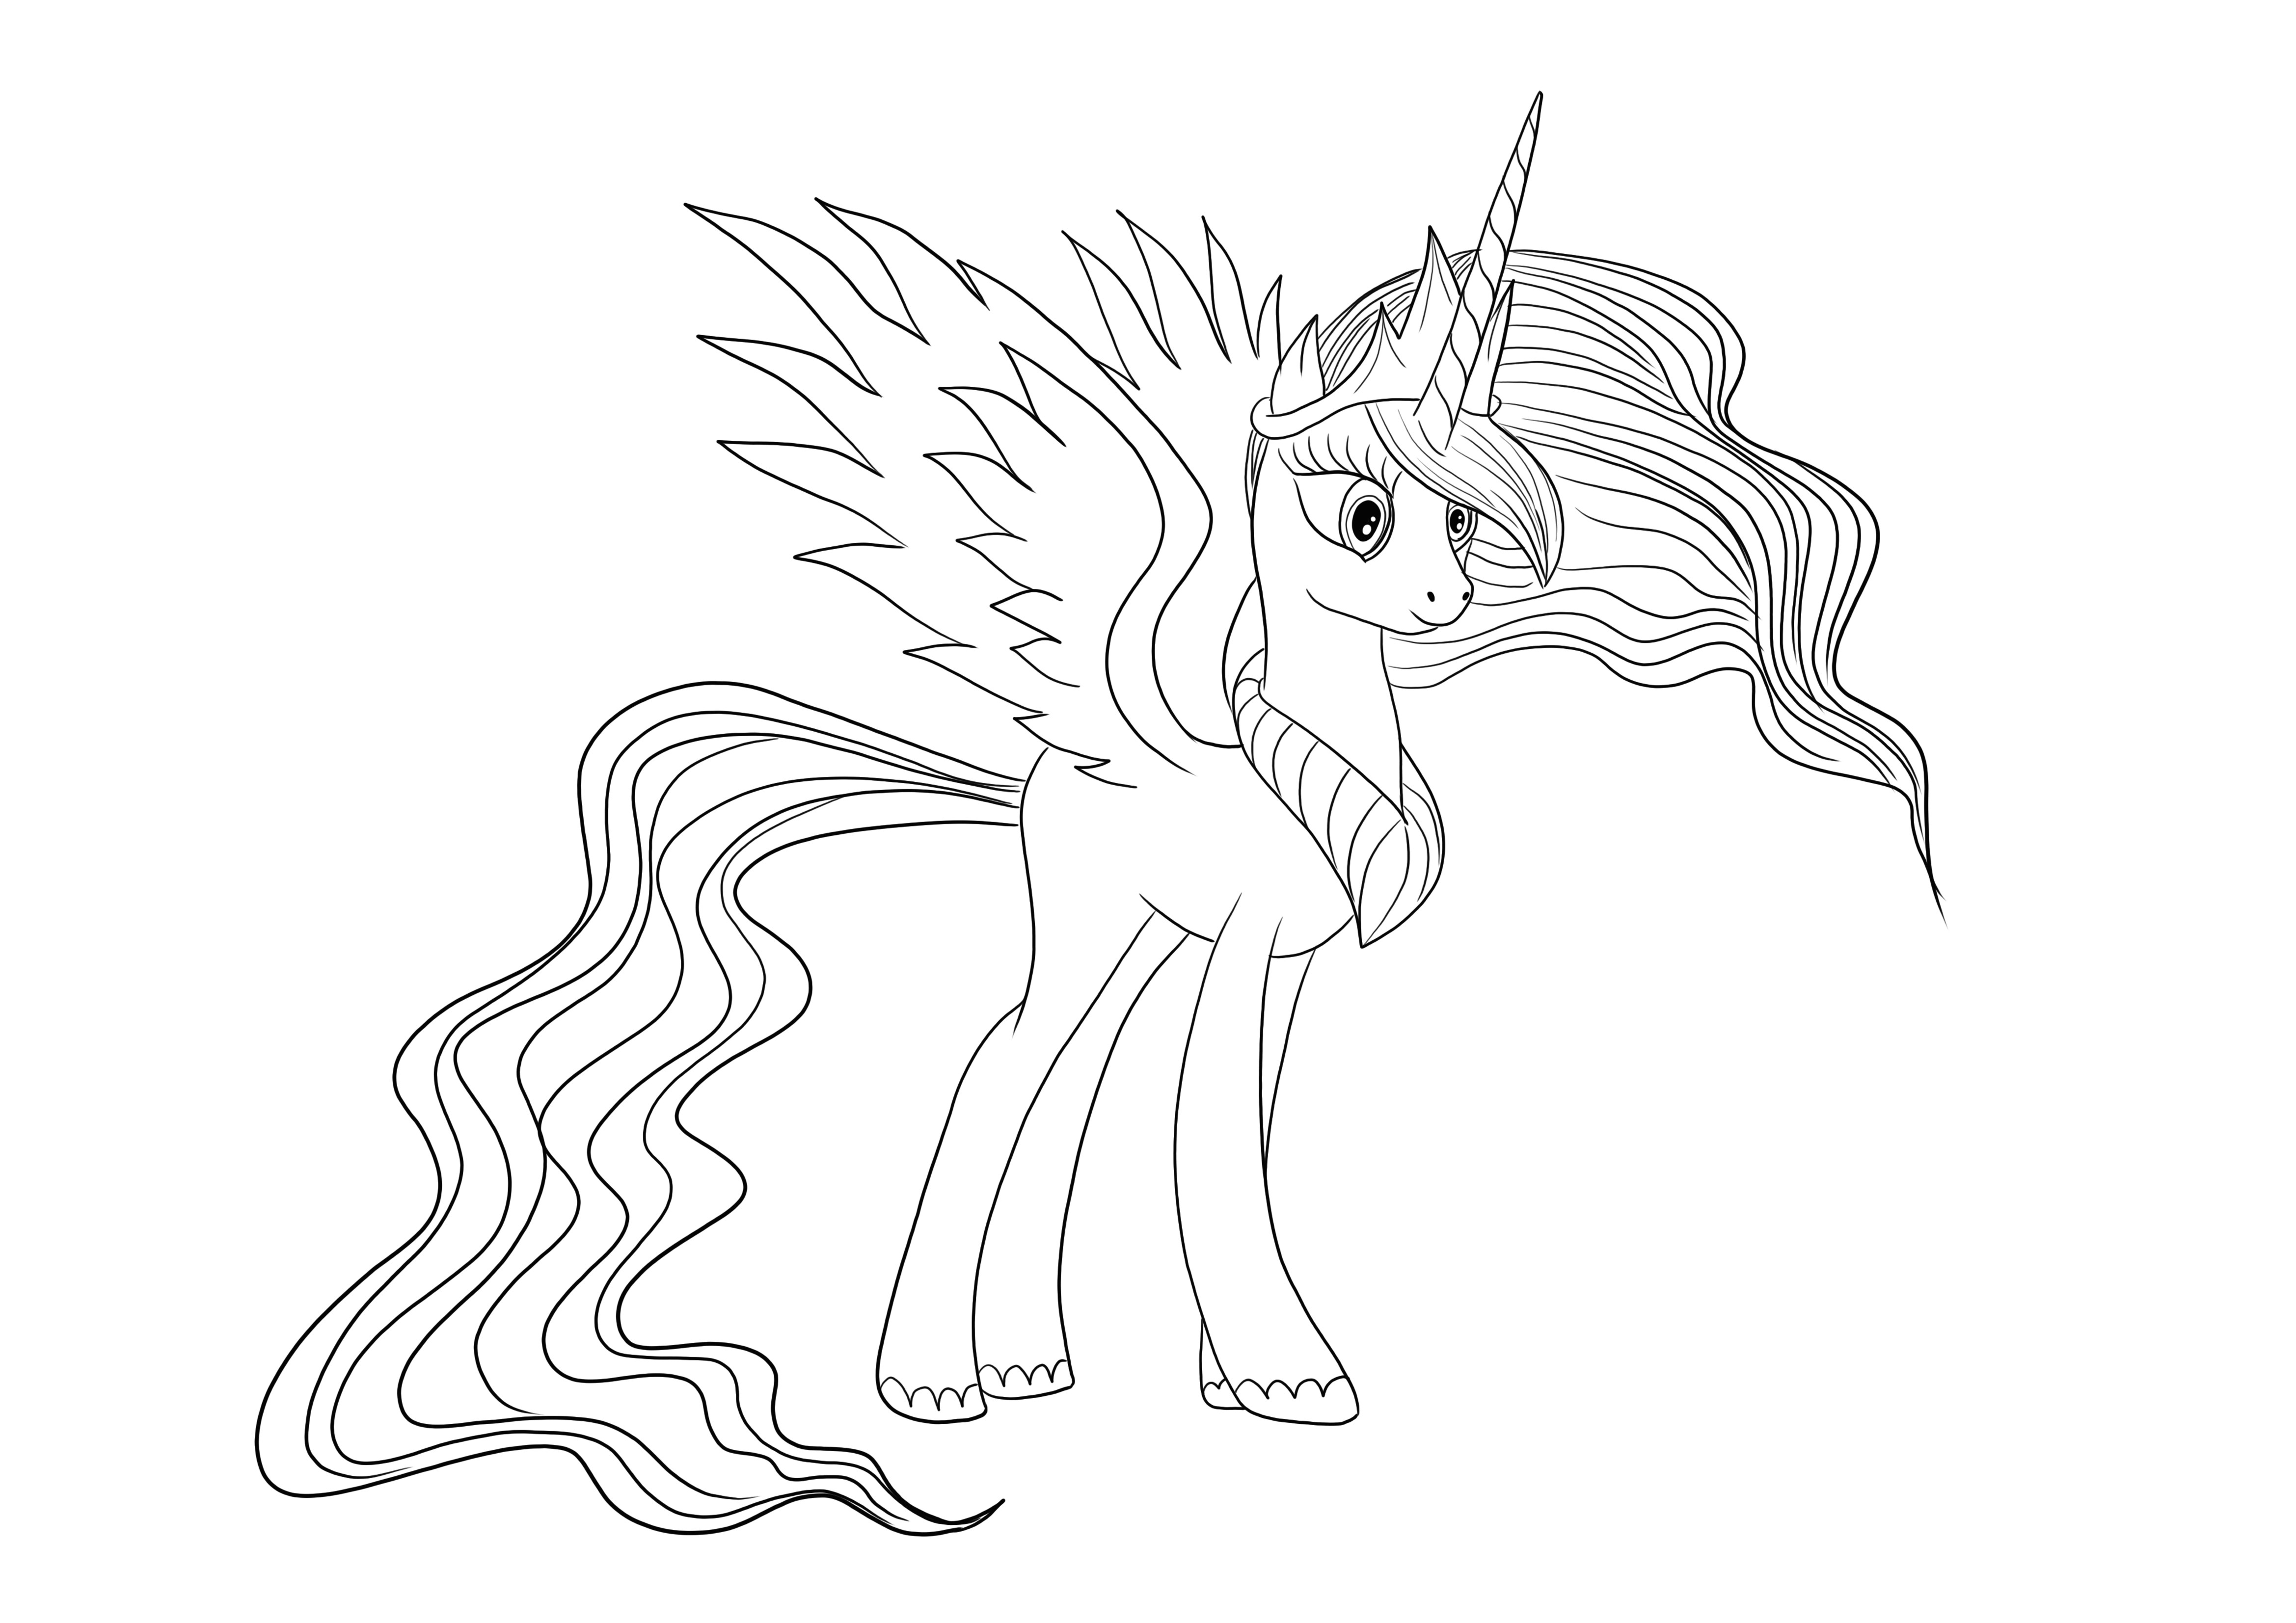 Gracious Princess Celestia de Little Pony para descargar gratis e imagen a color